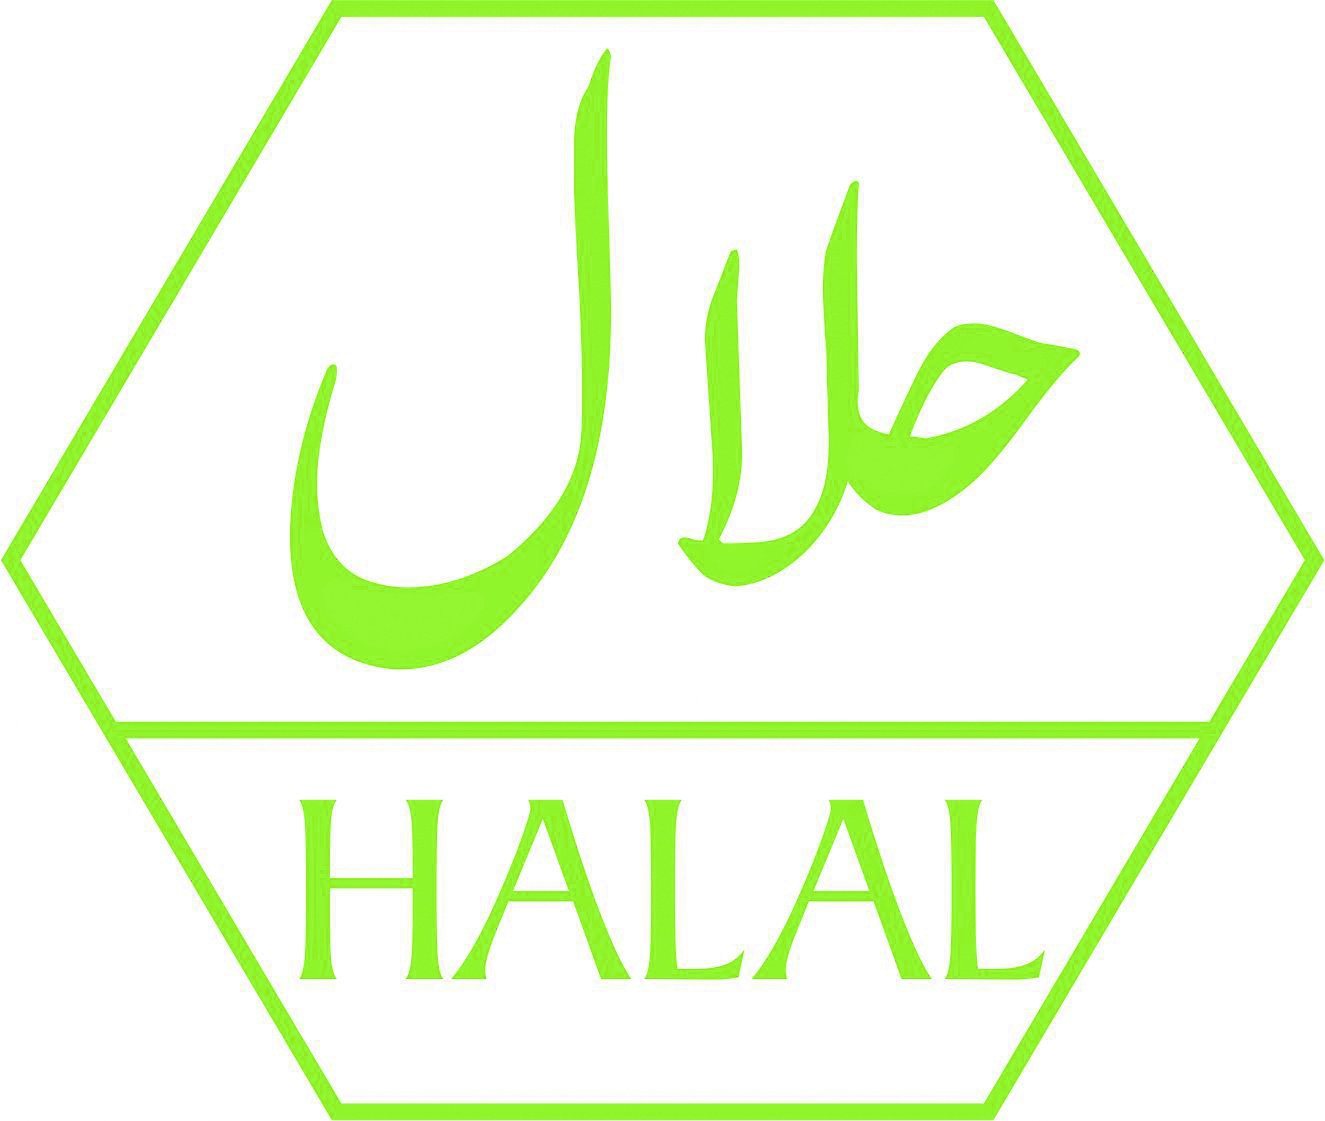 Халяль ижевск. Халяль. Значок Халяль. Логотип халал. Halal Халяль logo.